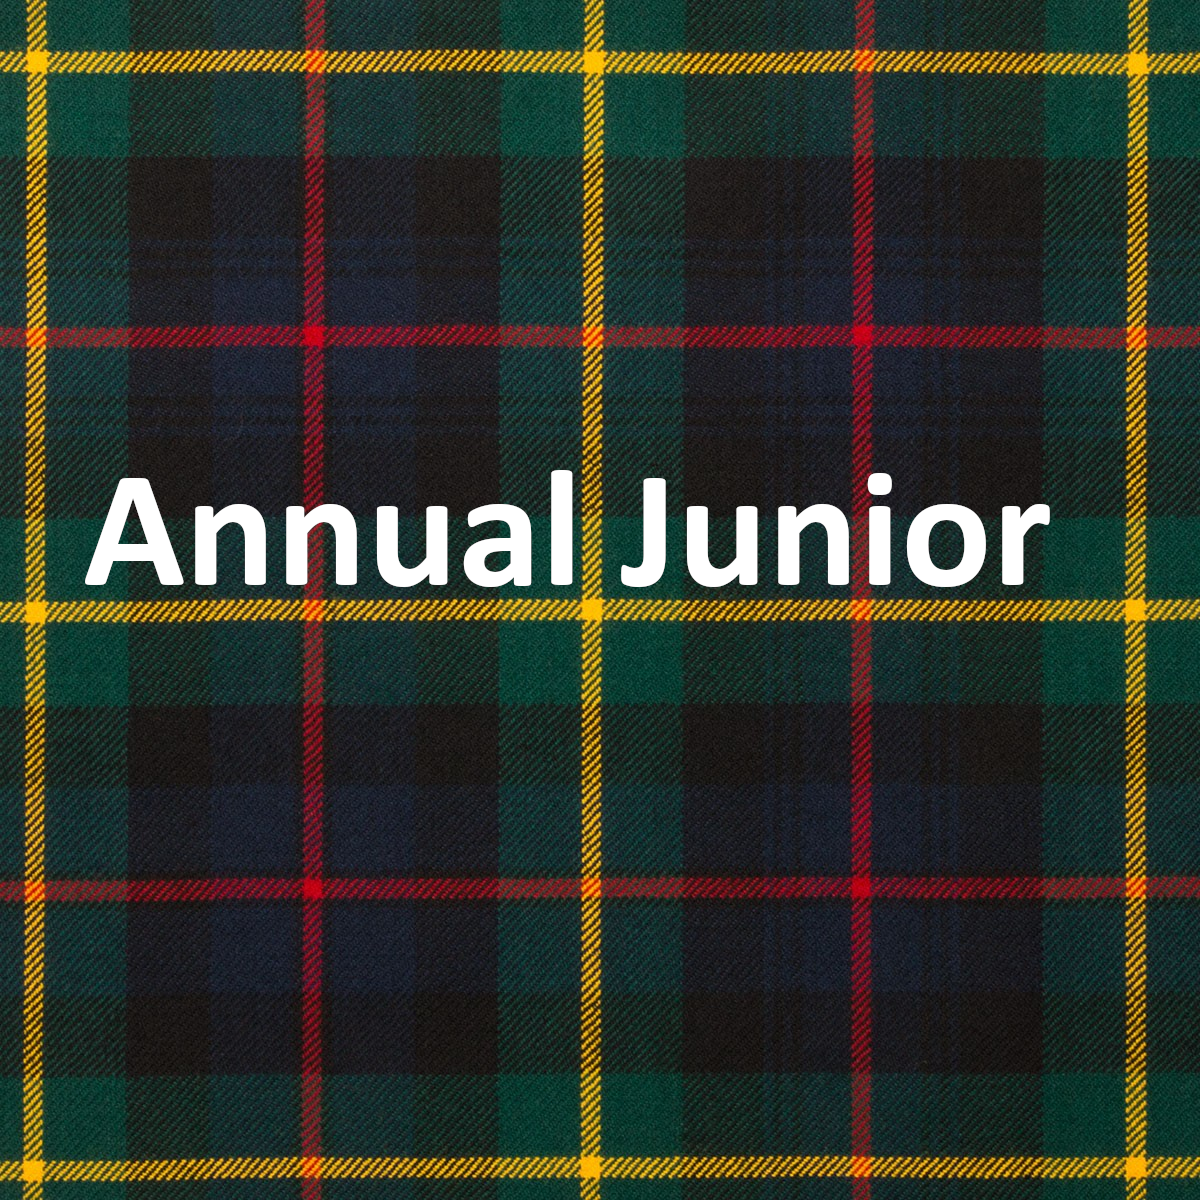 Annual Junior Membership